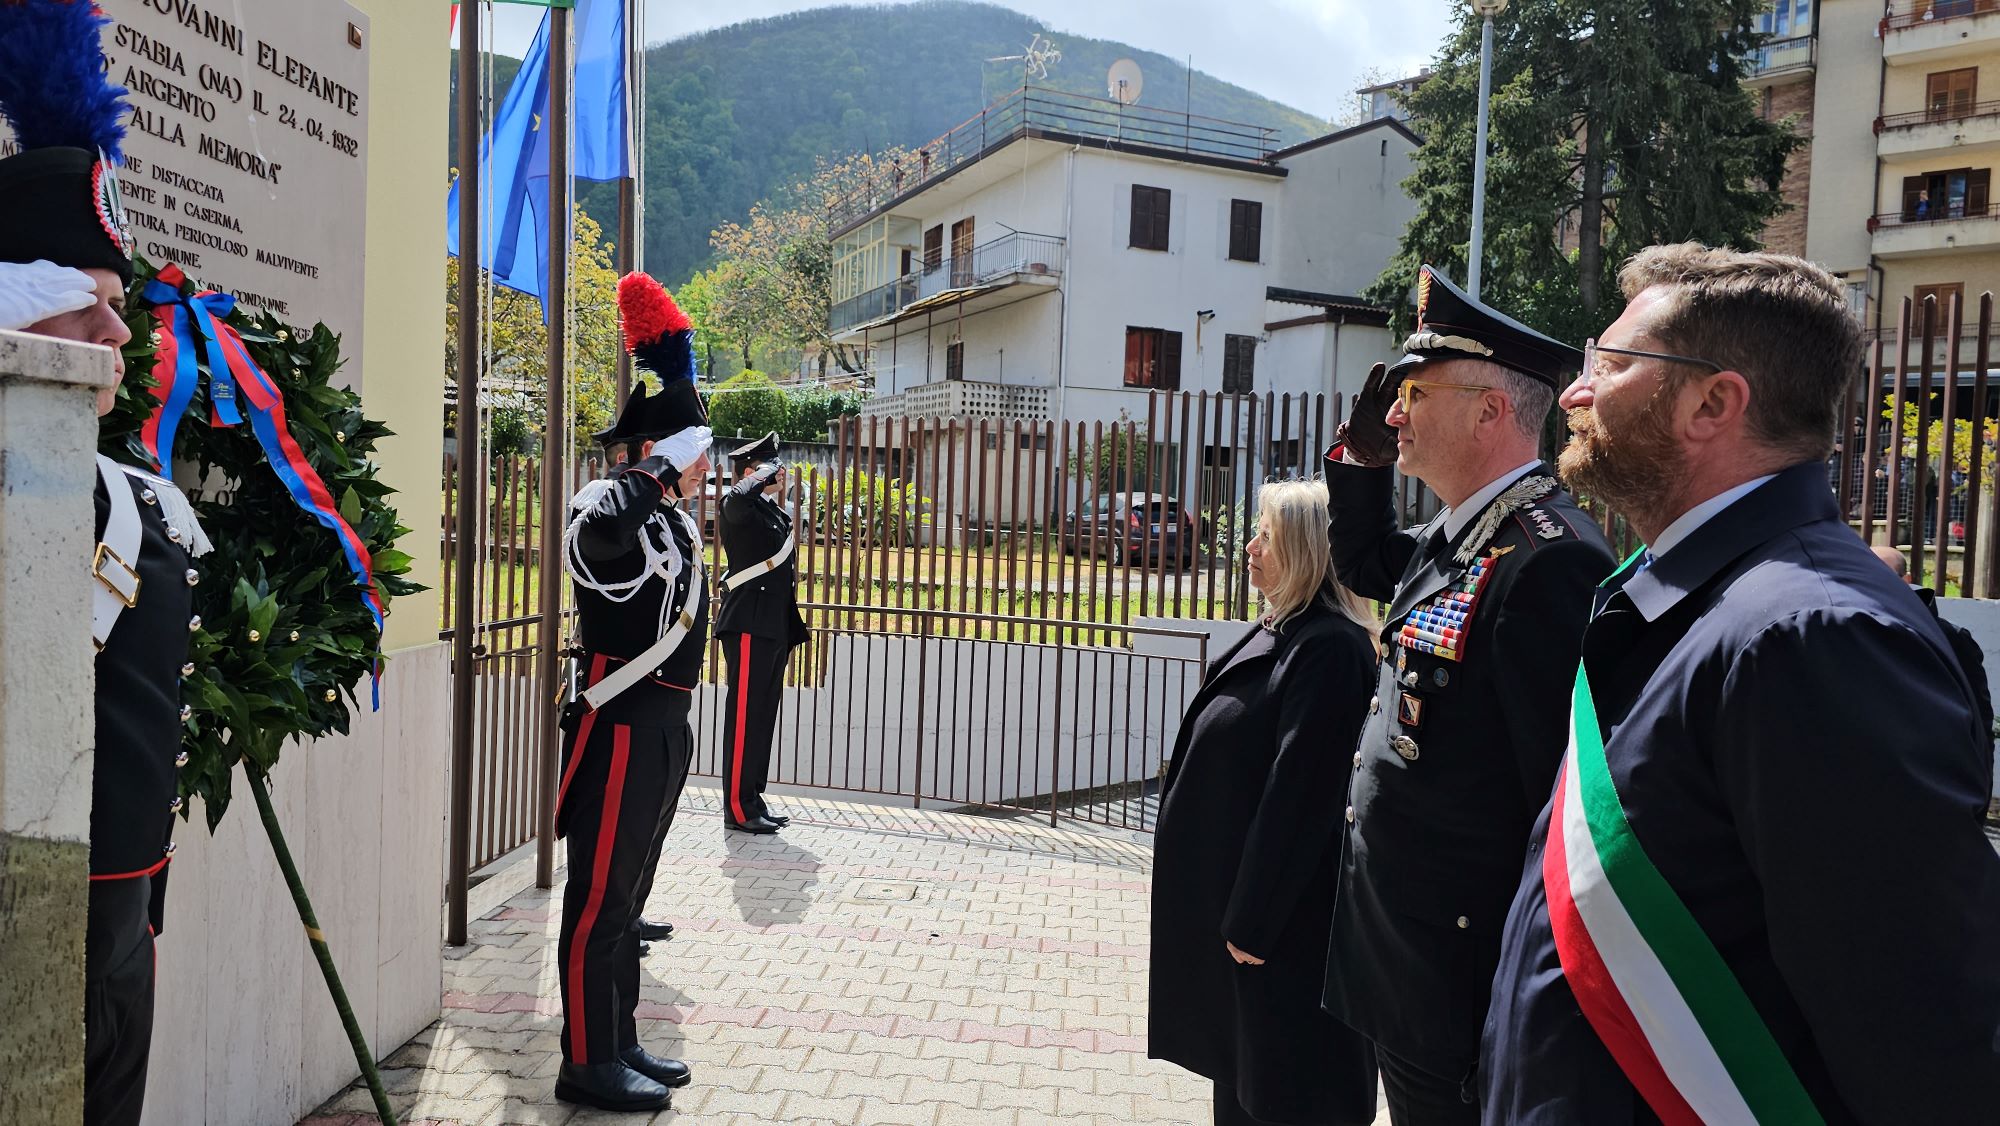 Chiusano di San Domenico, intitolazione della  Stazione Carabinieri al carabiniere scelto Giovanni Elefante